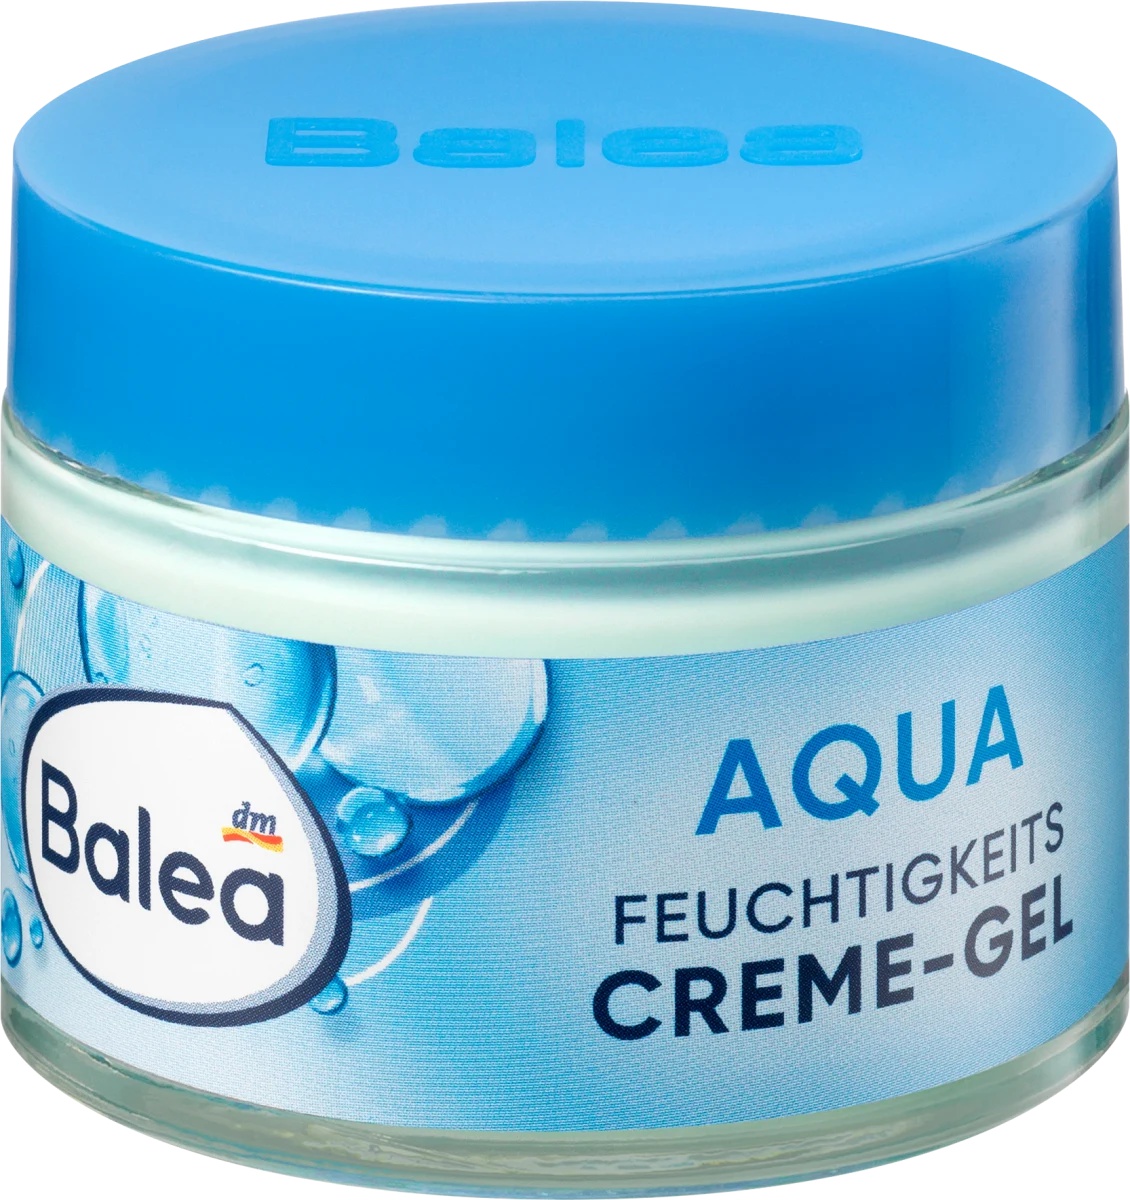 Balea Aqua Feuchtigkeits Creme Gel